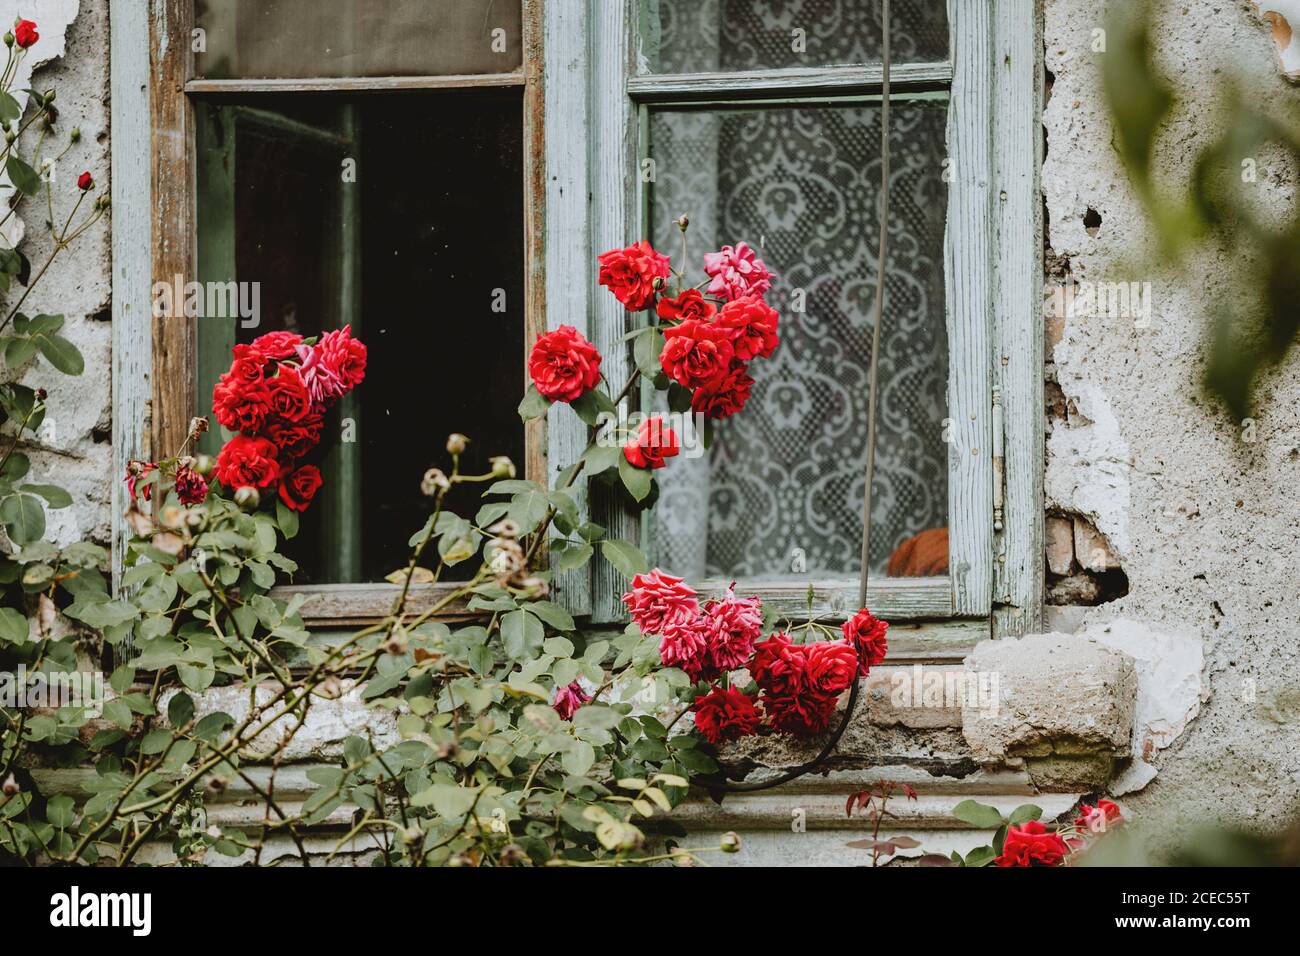 La buisson des roses rouges à fleurs devant l'ancien maison avec façade fissurée et fenêtre ouverte avec cadre turquoise et rideau Banque D'Images